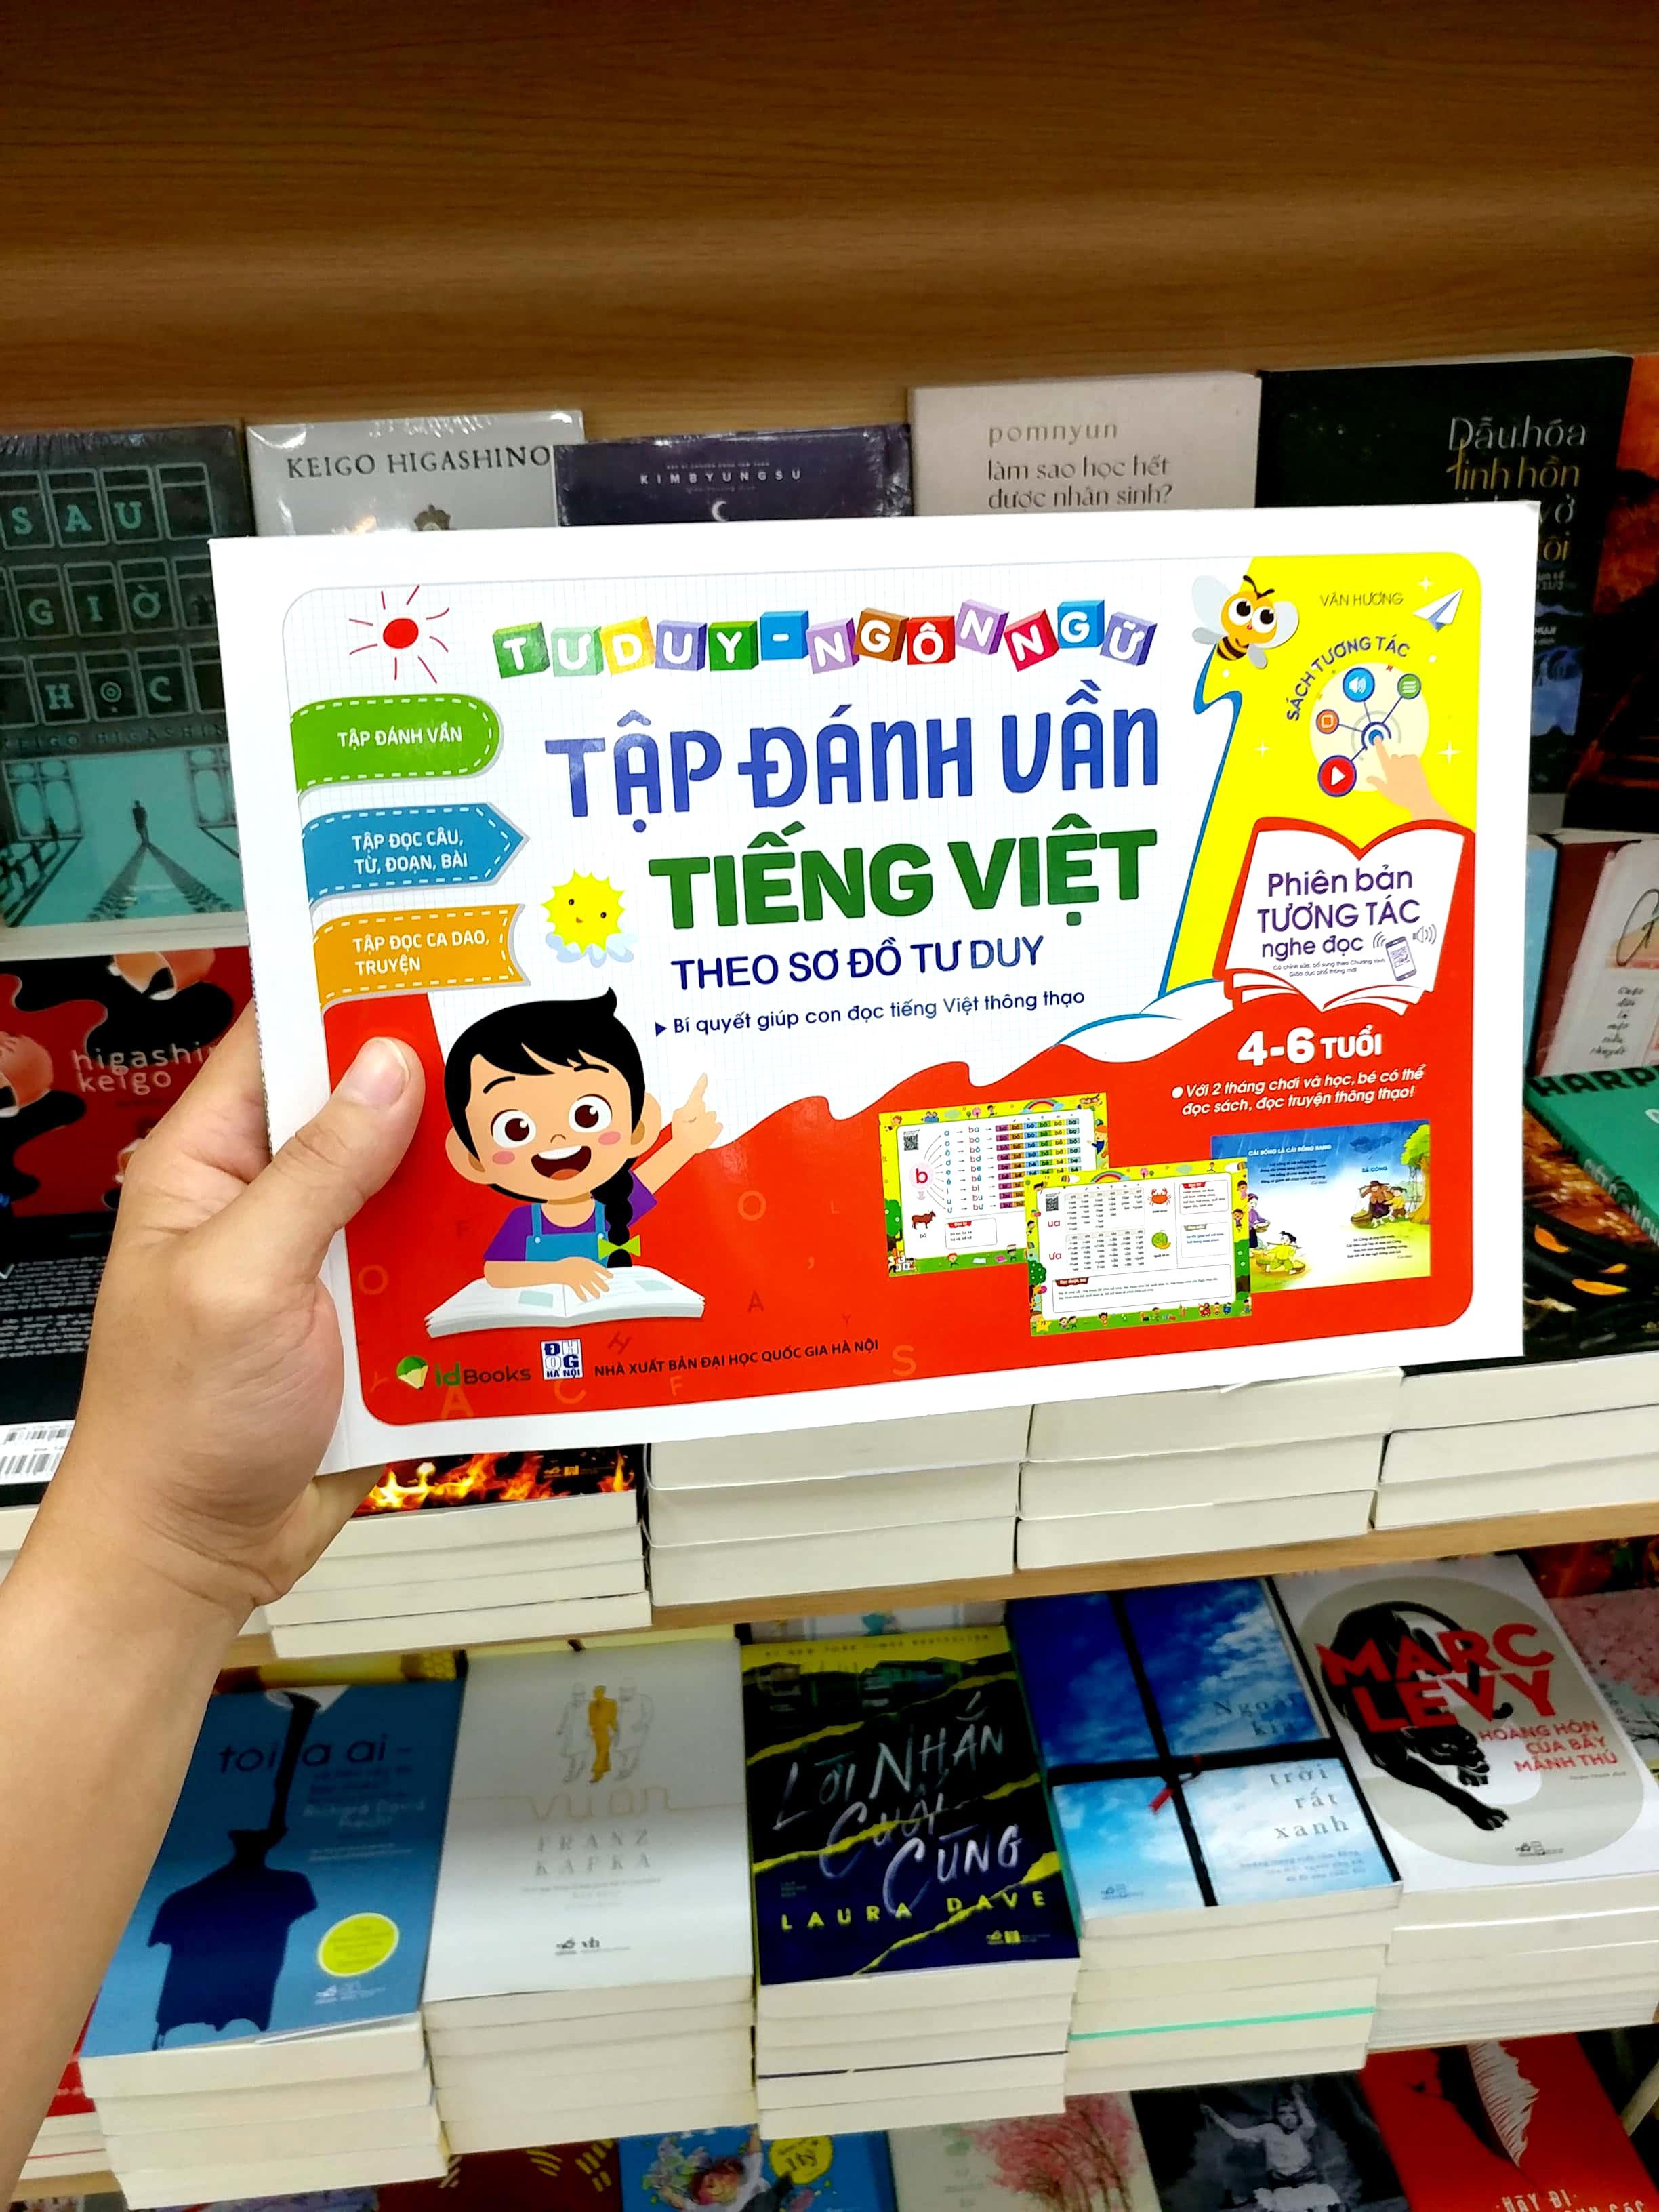 Tập Đánh Vần Tiếng Việt Theo Sơ Đồ Tư Duy (4-6 Tuổi) - Phiên Bản Tương Tác (Tái Bản 2023)